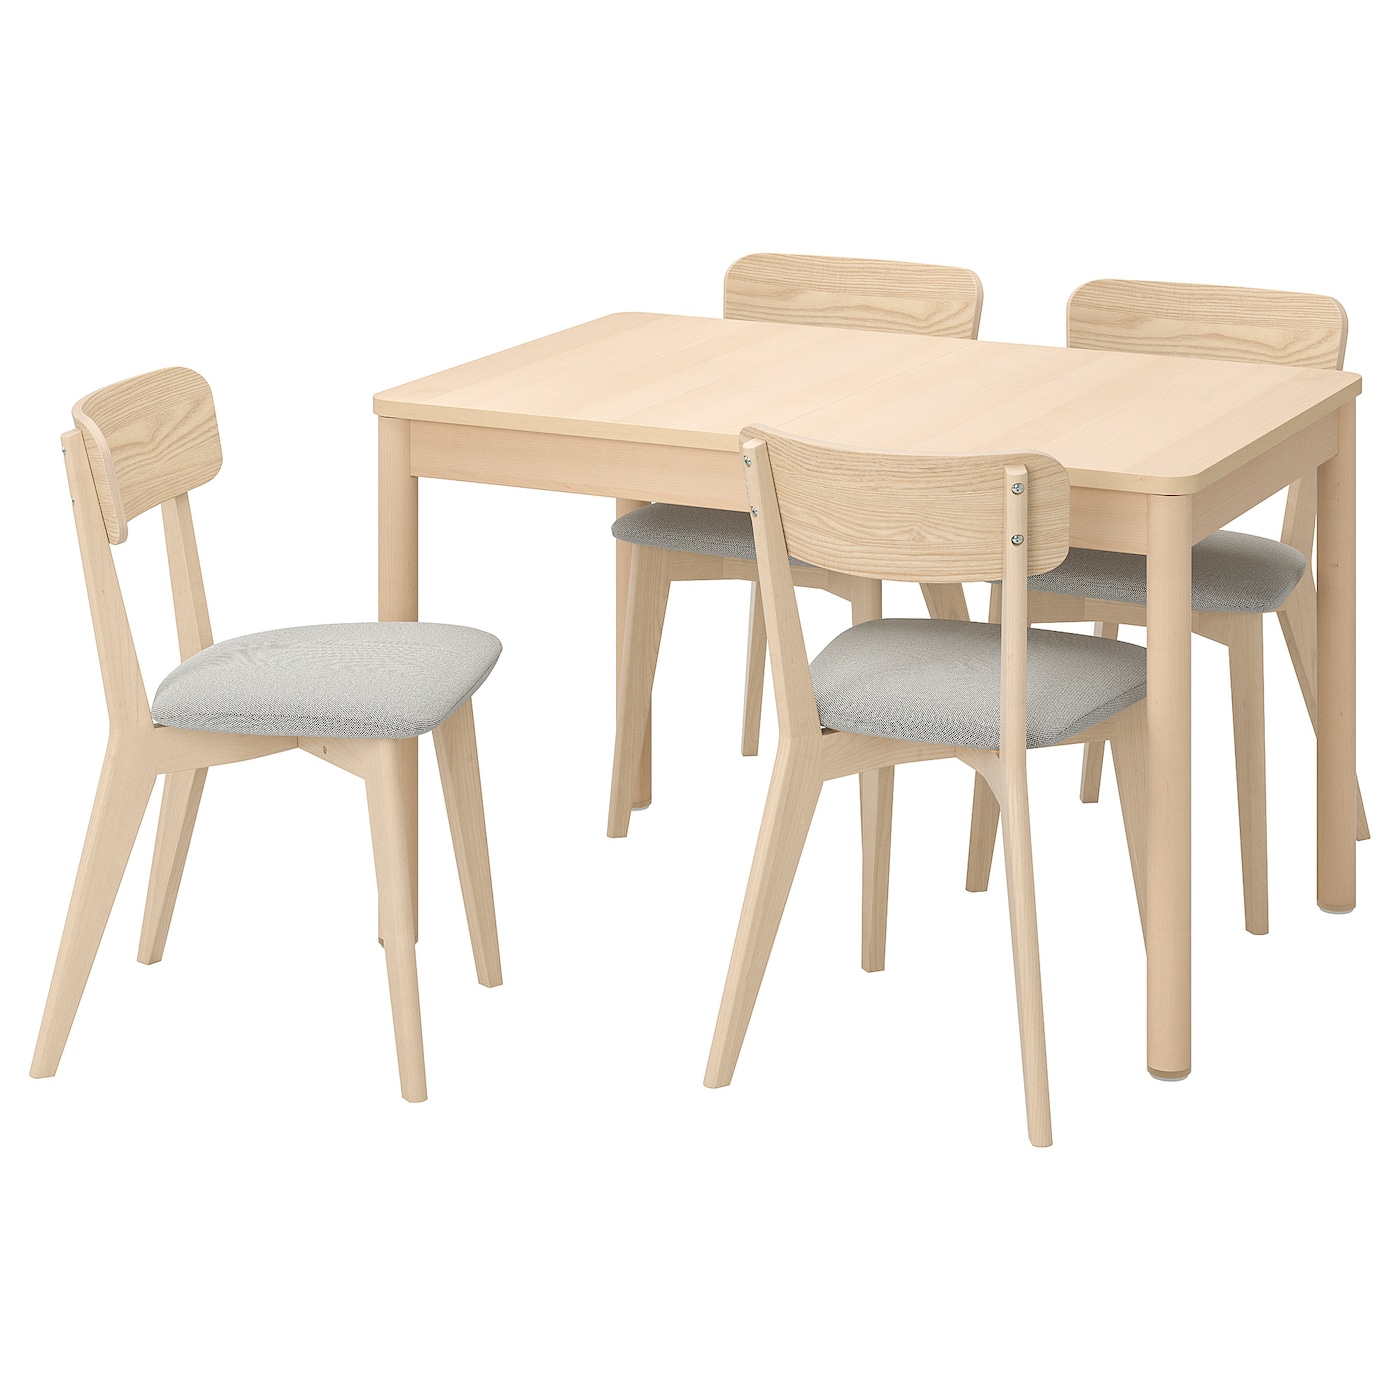 Стол и 4 стула - RÖNNINGE / LISABO/ RОNNINGE  IKEA/ РЕННИНГЕ/ ЛИСАБО ИКЕА,  118/173 см,  под беленый дуб / серый